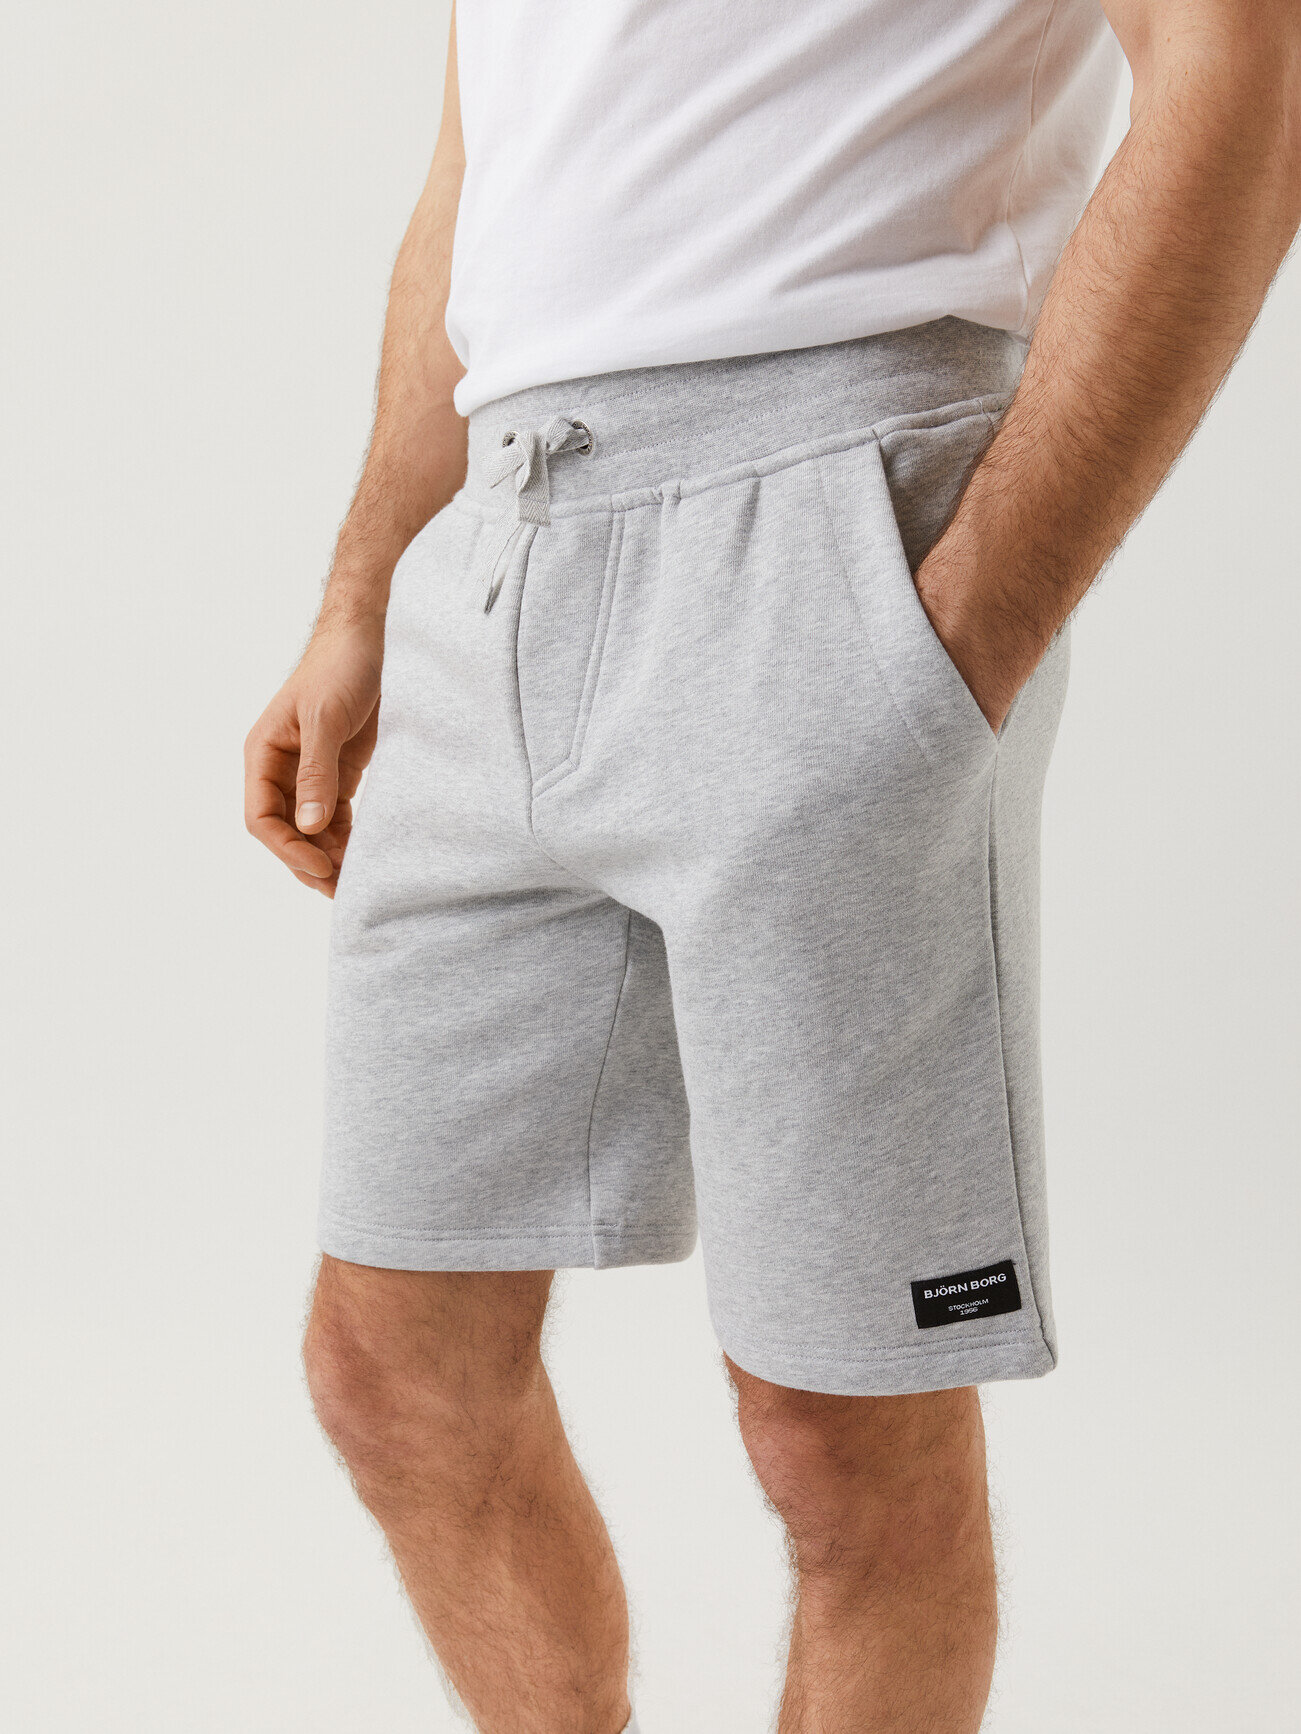 Centre Shorts - Light Grey Melange